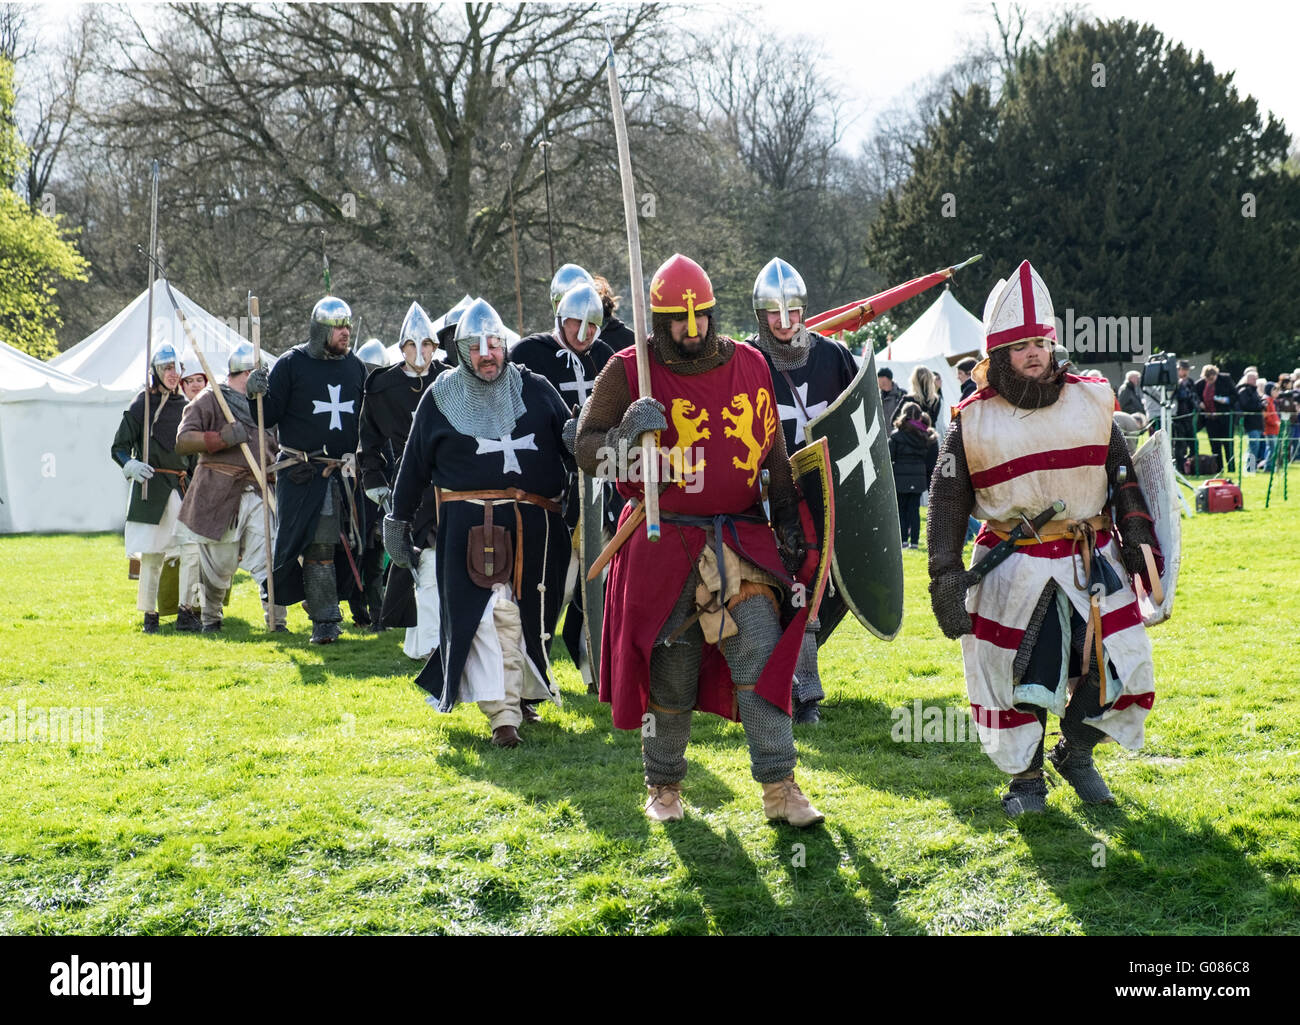 Schlacht Re-enactment Der das Mittelalter. Re-enactors als Kreuzfahrer gekleidet Stockfoto